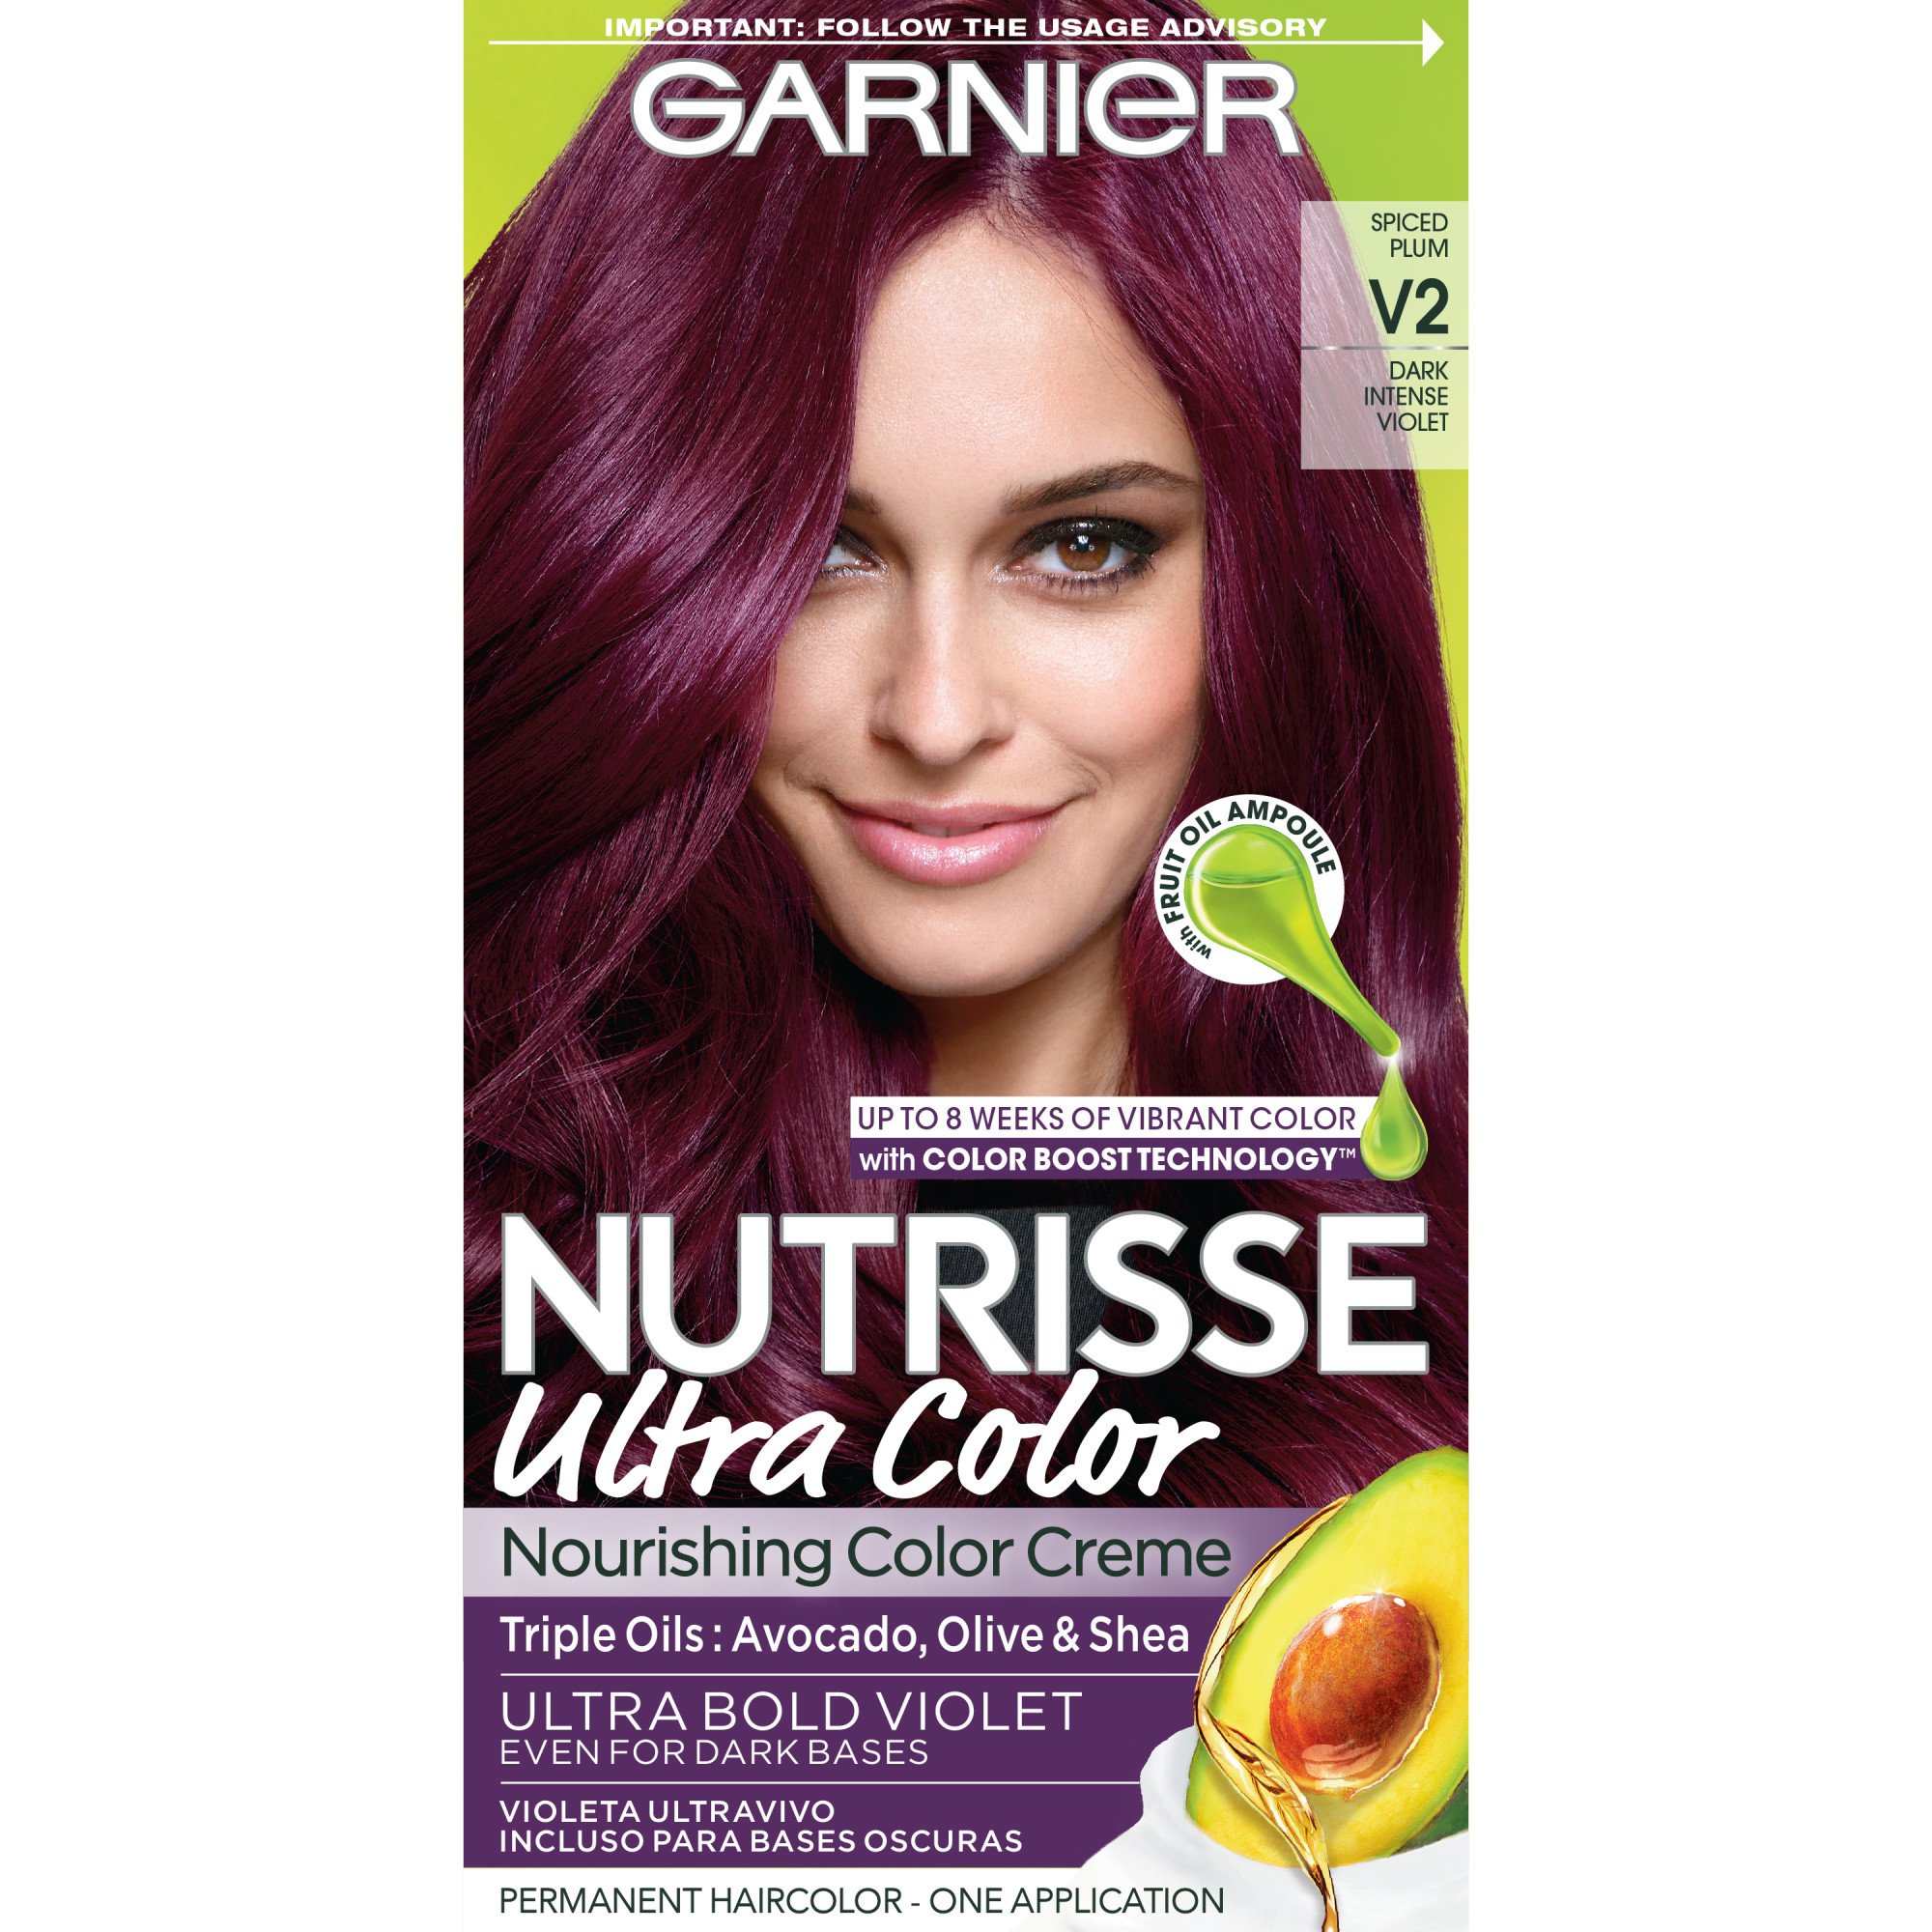 Garnier Nutrisse Nourishing Color Creme V2 Dark Intense Violet